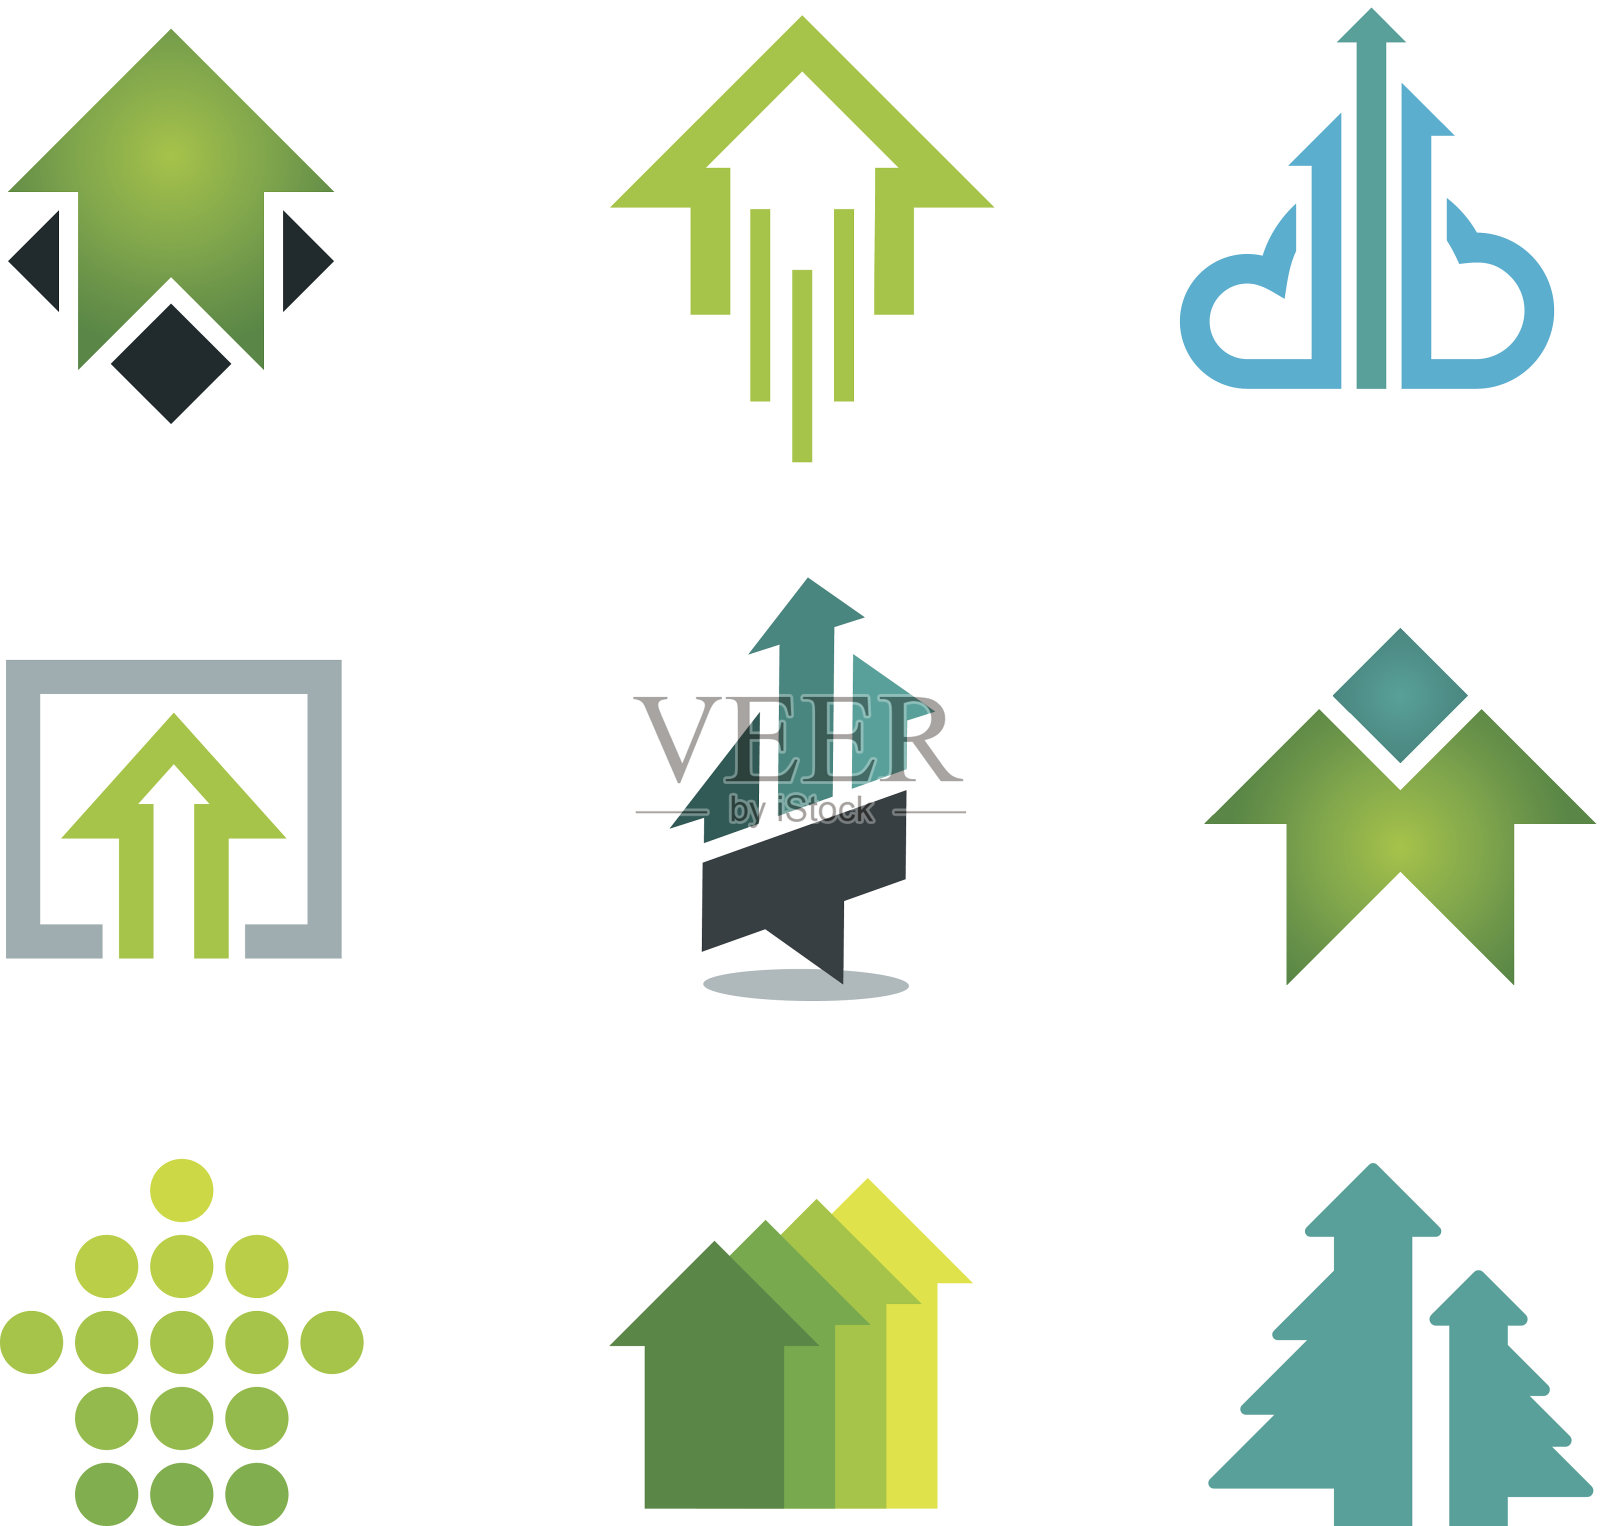 激励经济、金融、银行业的绿色成功商业标志图标素材